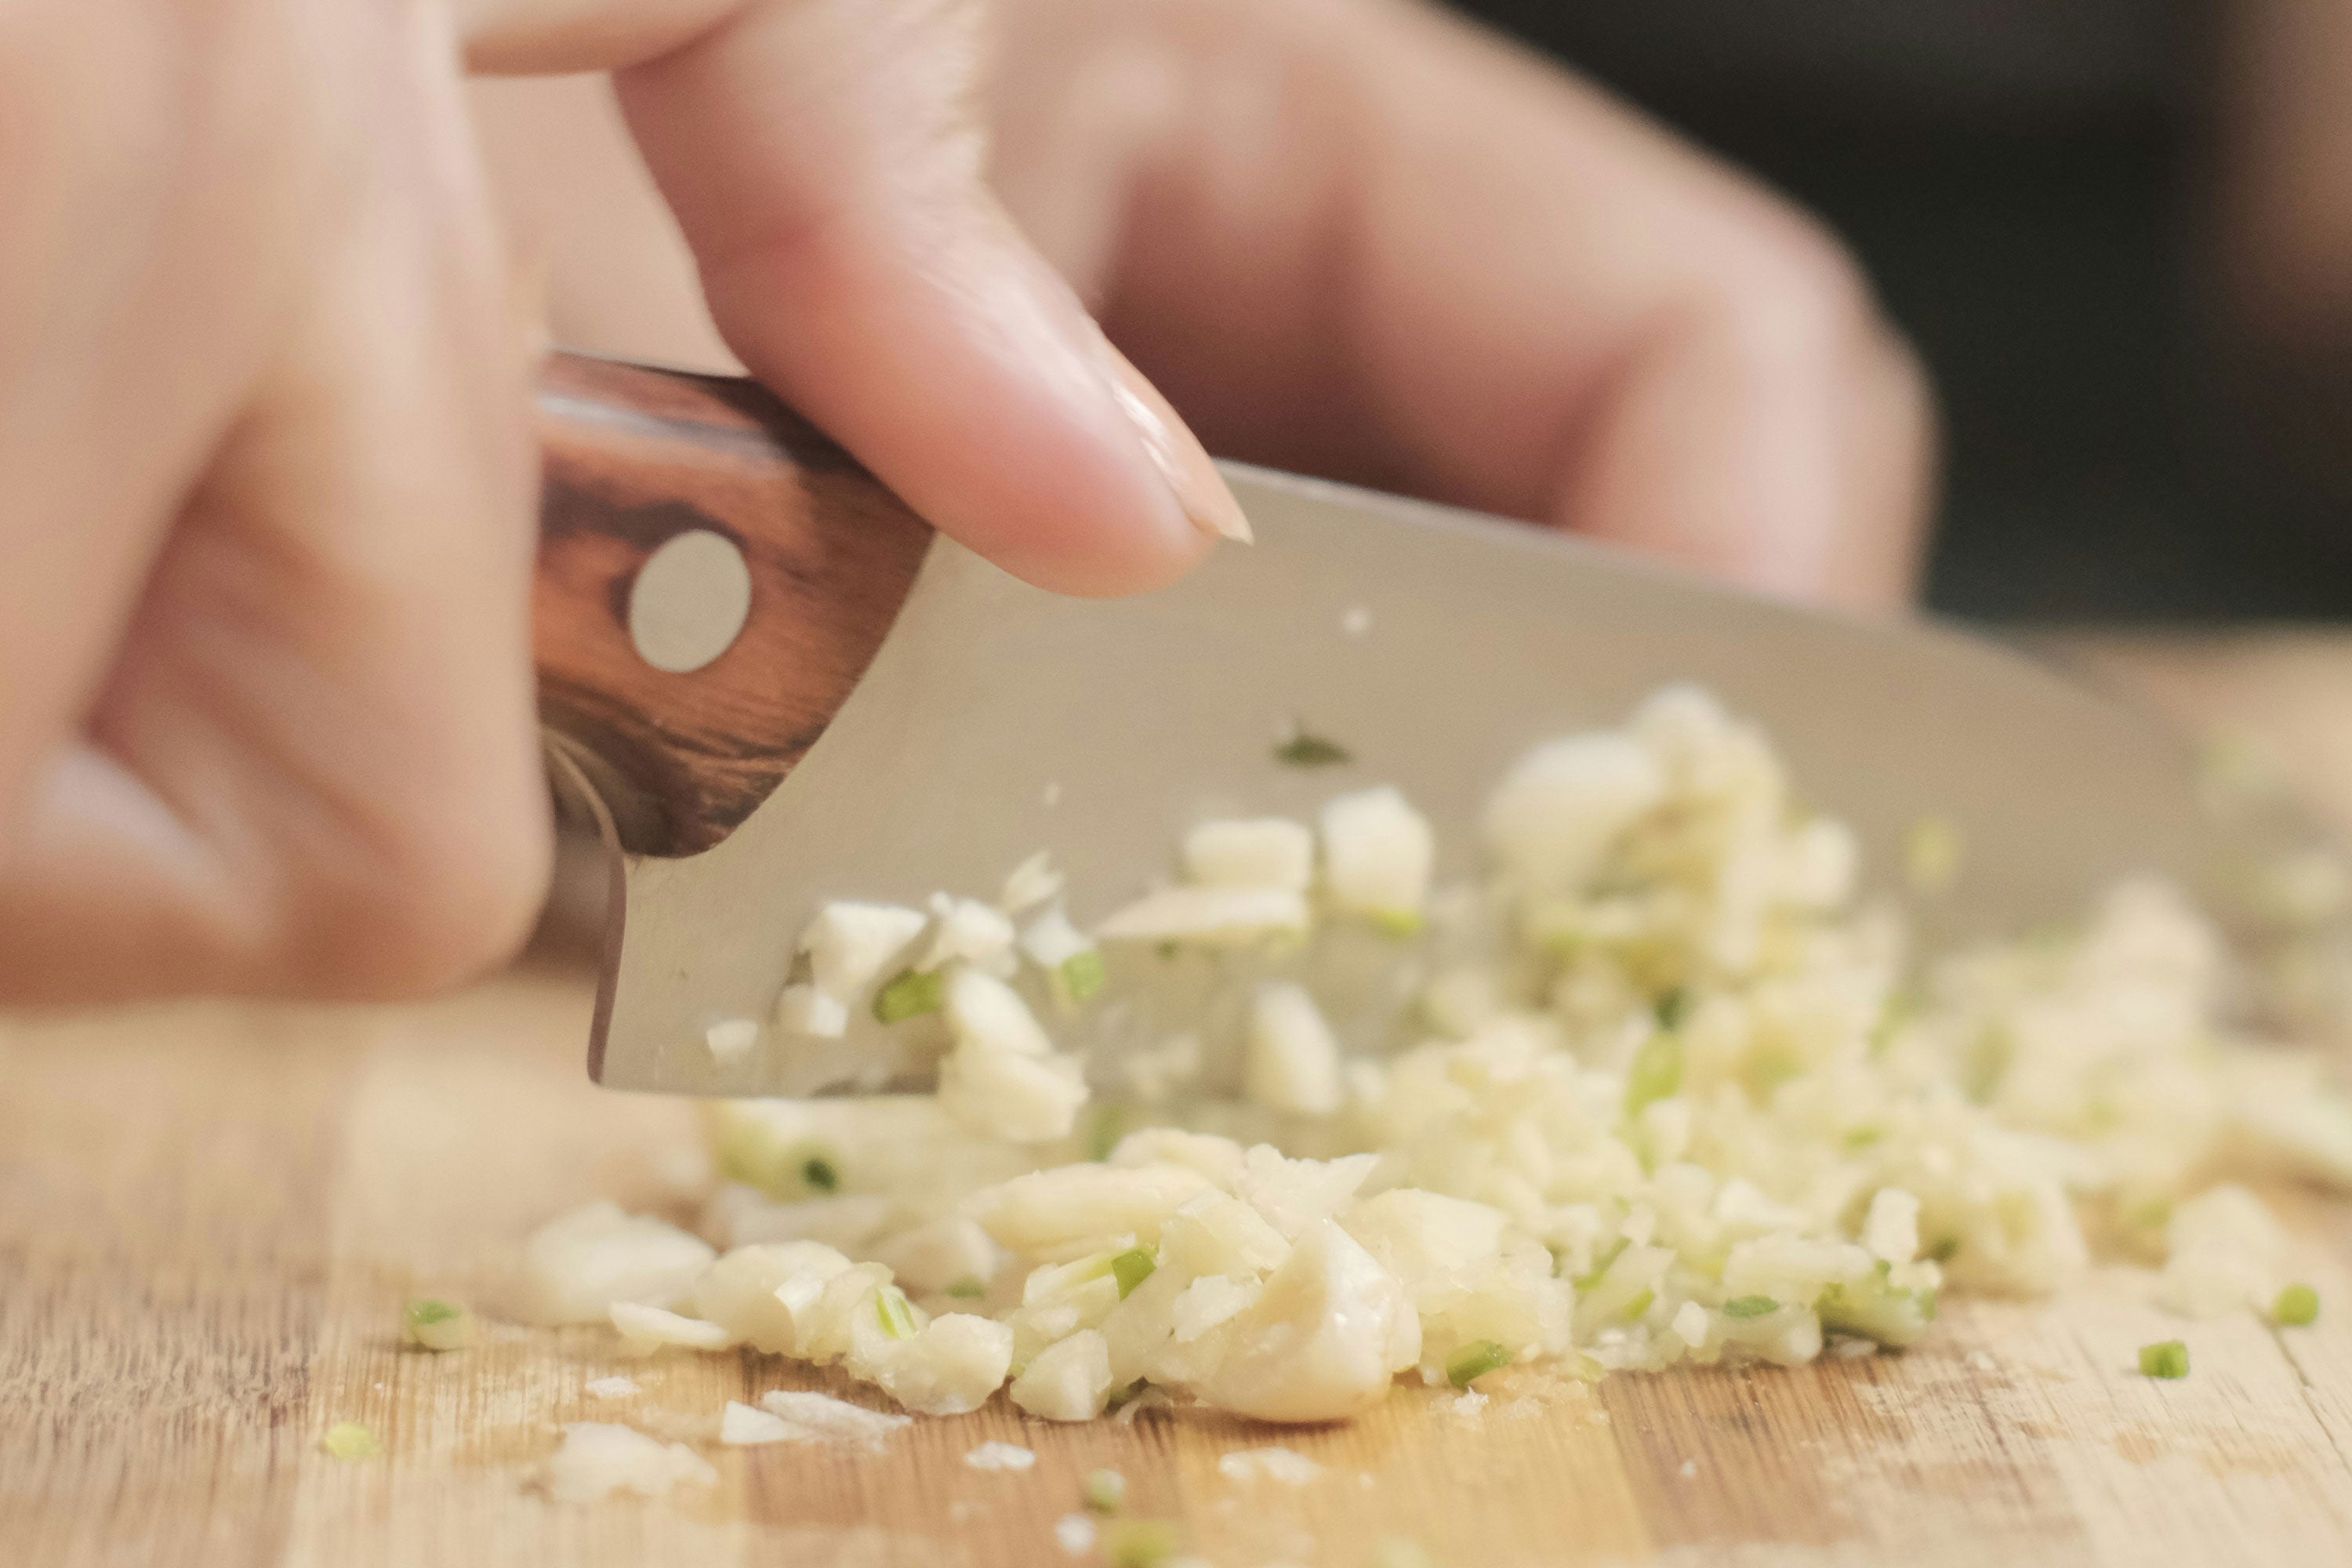 Person mincing garlic